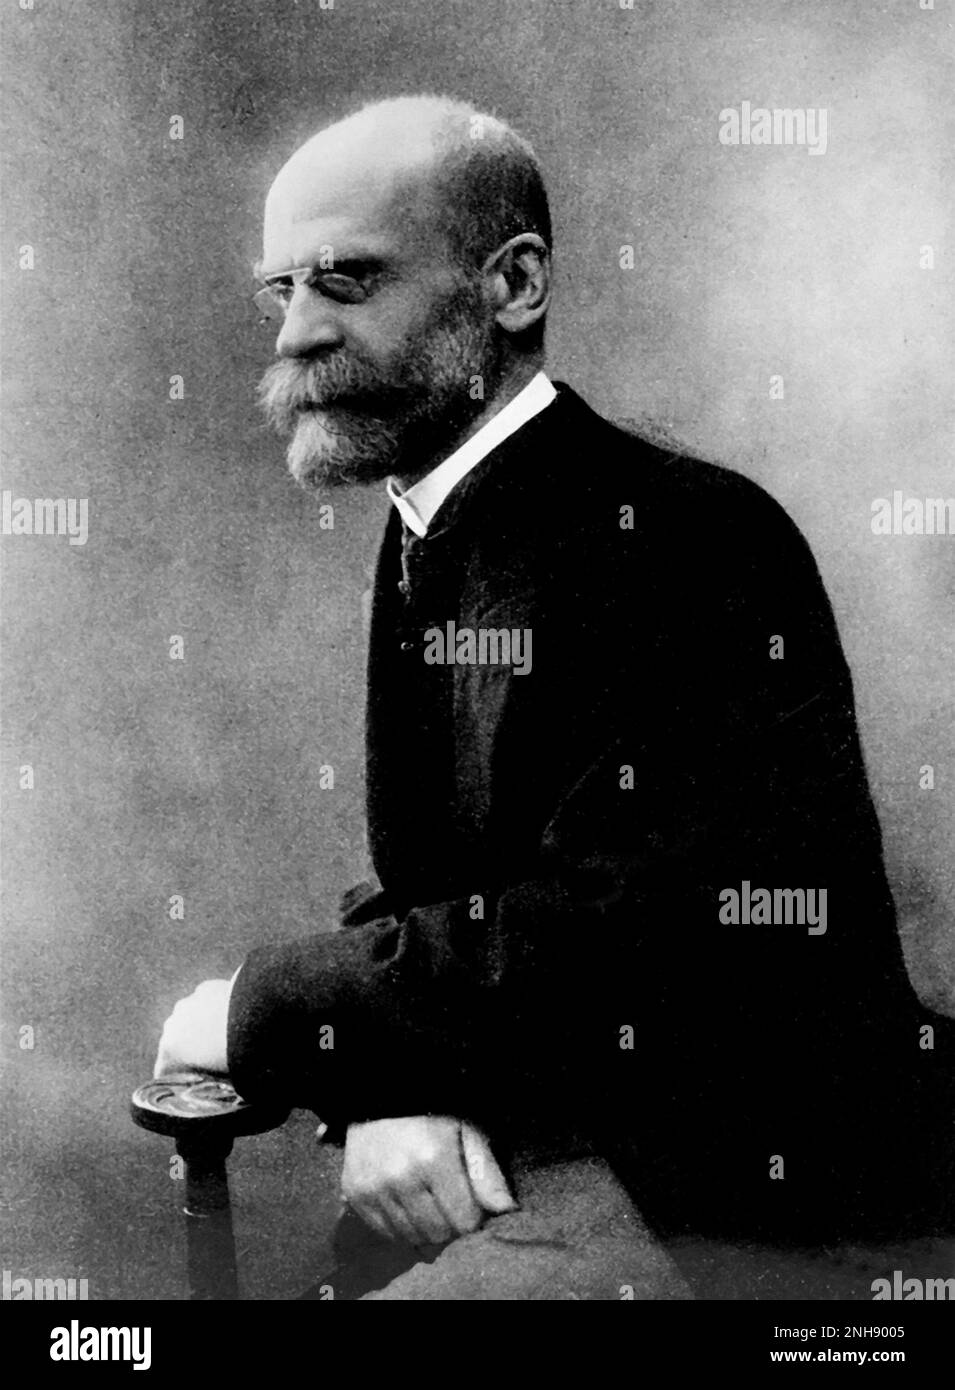 Emile Durkheim (1858-1917) était un sociologue français. Il a officiellement établi la discipline académique de sociologie et est communément cité comme l'un des principaux architectes des sciences sociales modernes. Banque D'Images